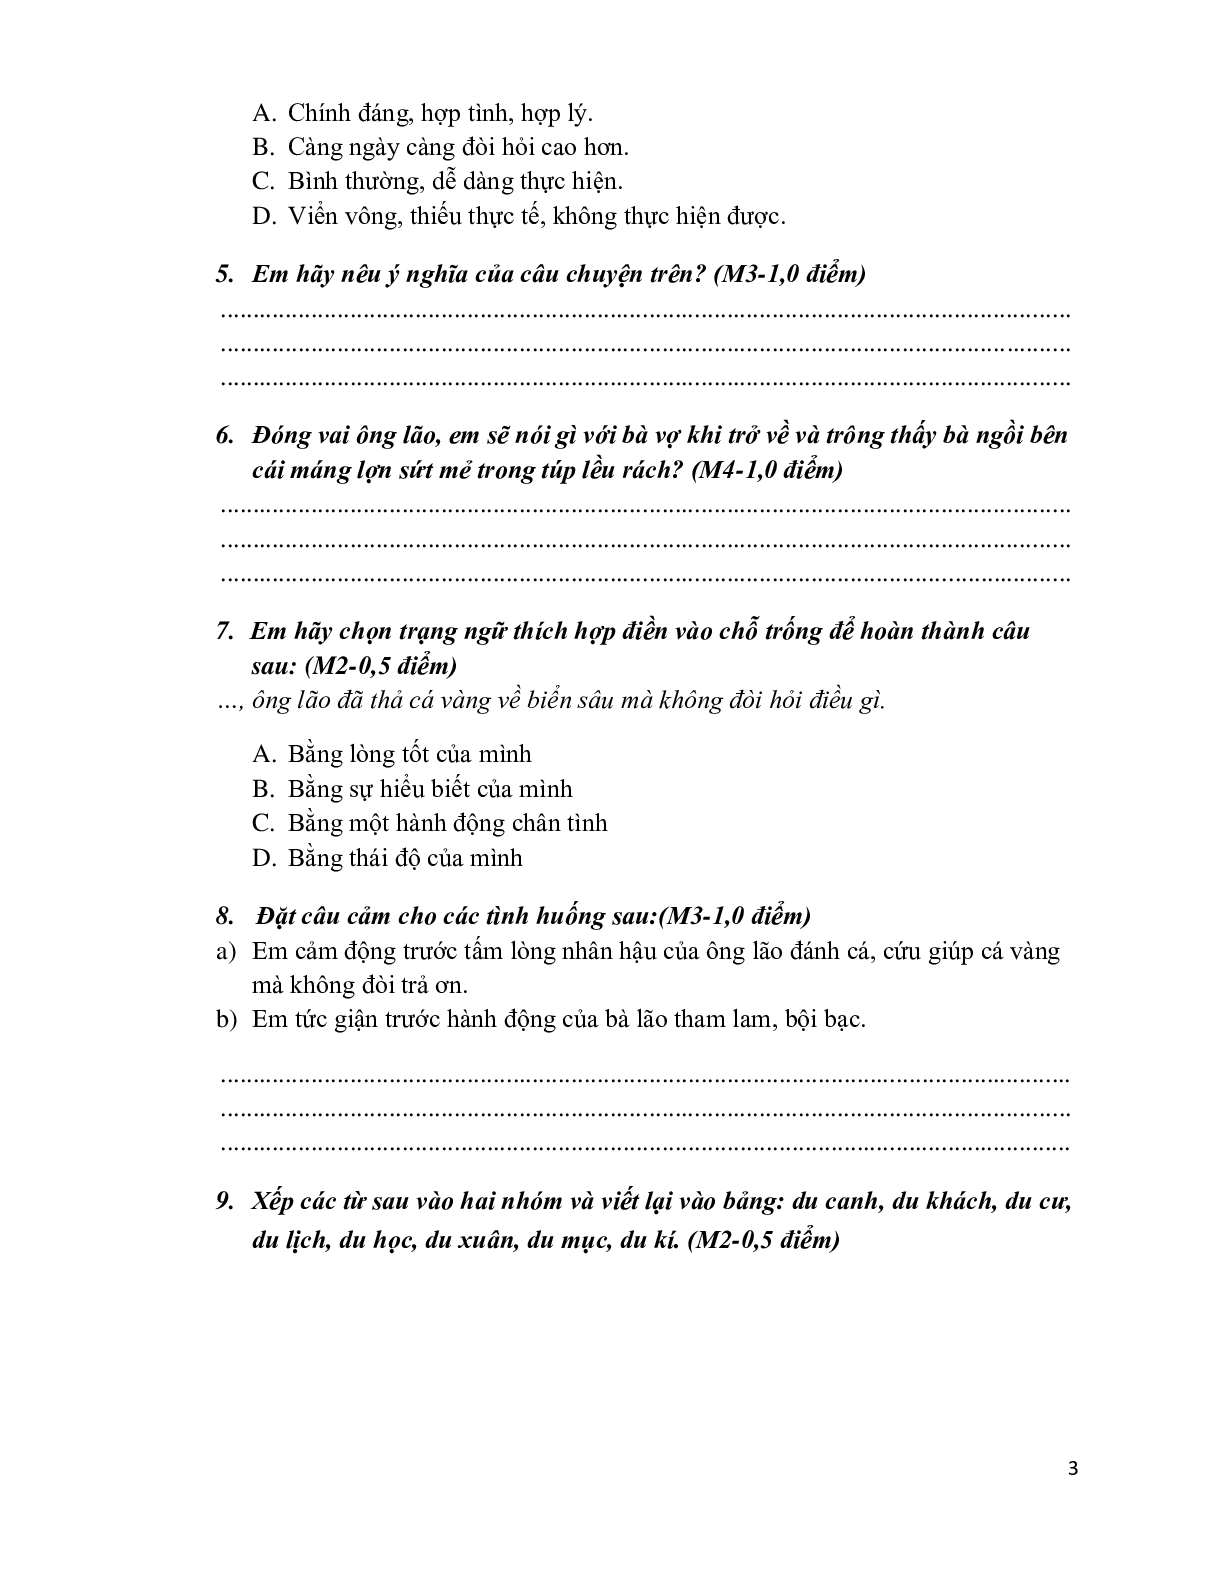 Đề kiểm tra cuối học kỳ 2 môn Tiếng Việt  lớp 4 (trang 3)